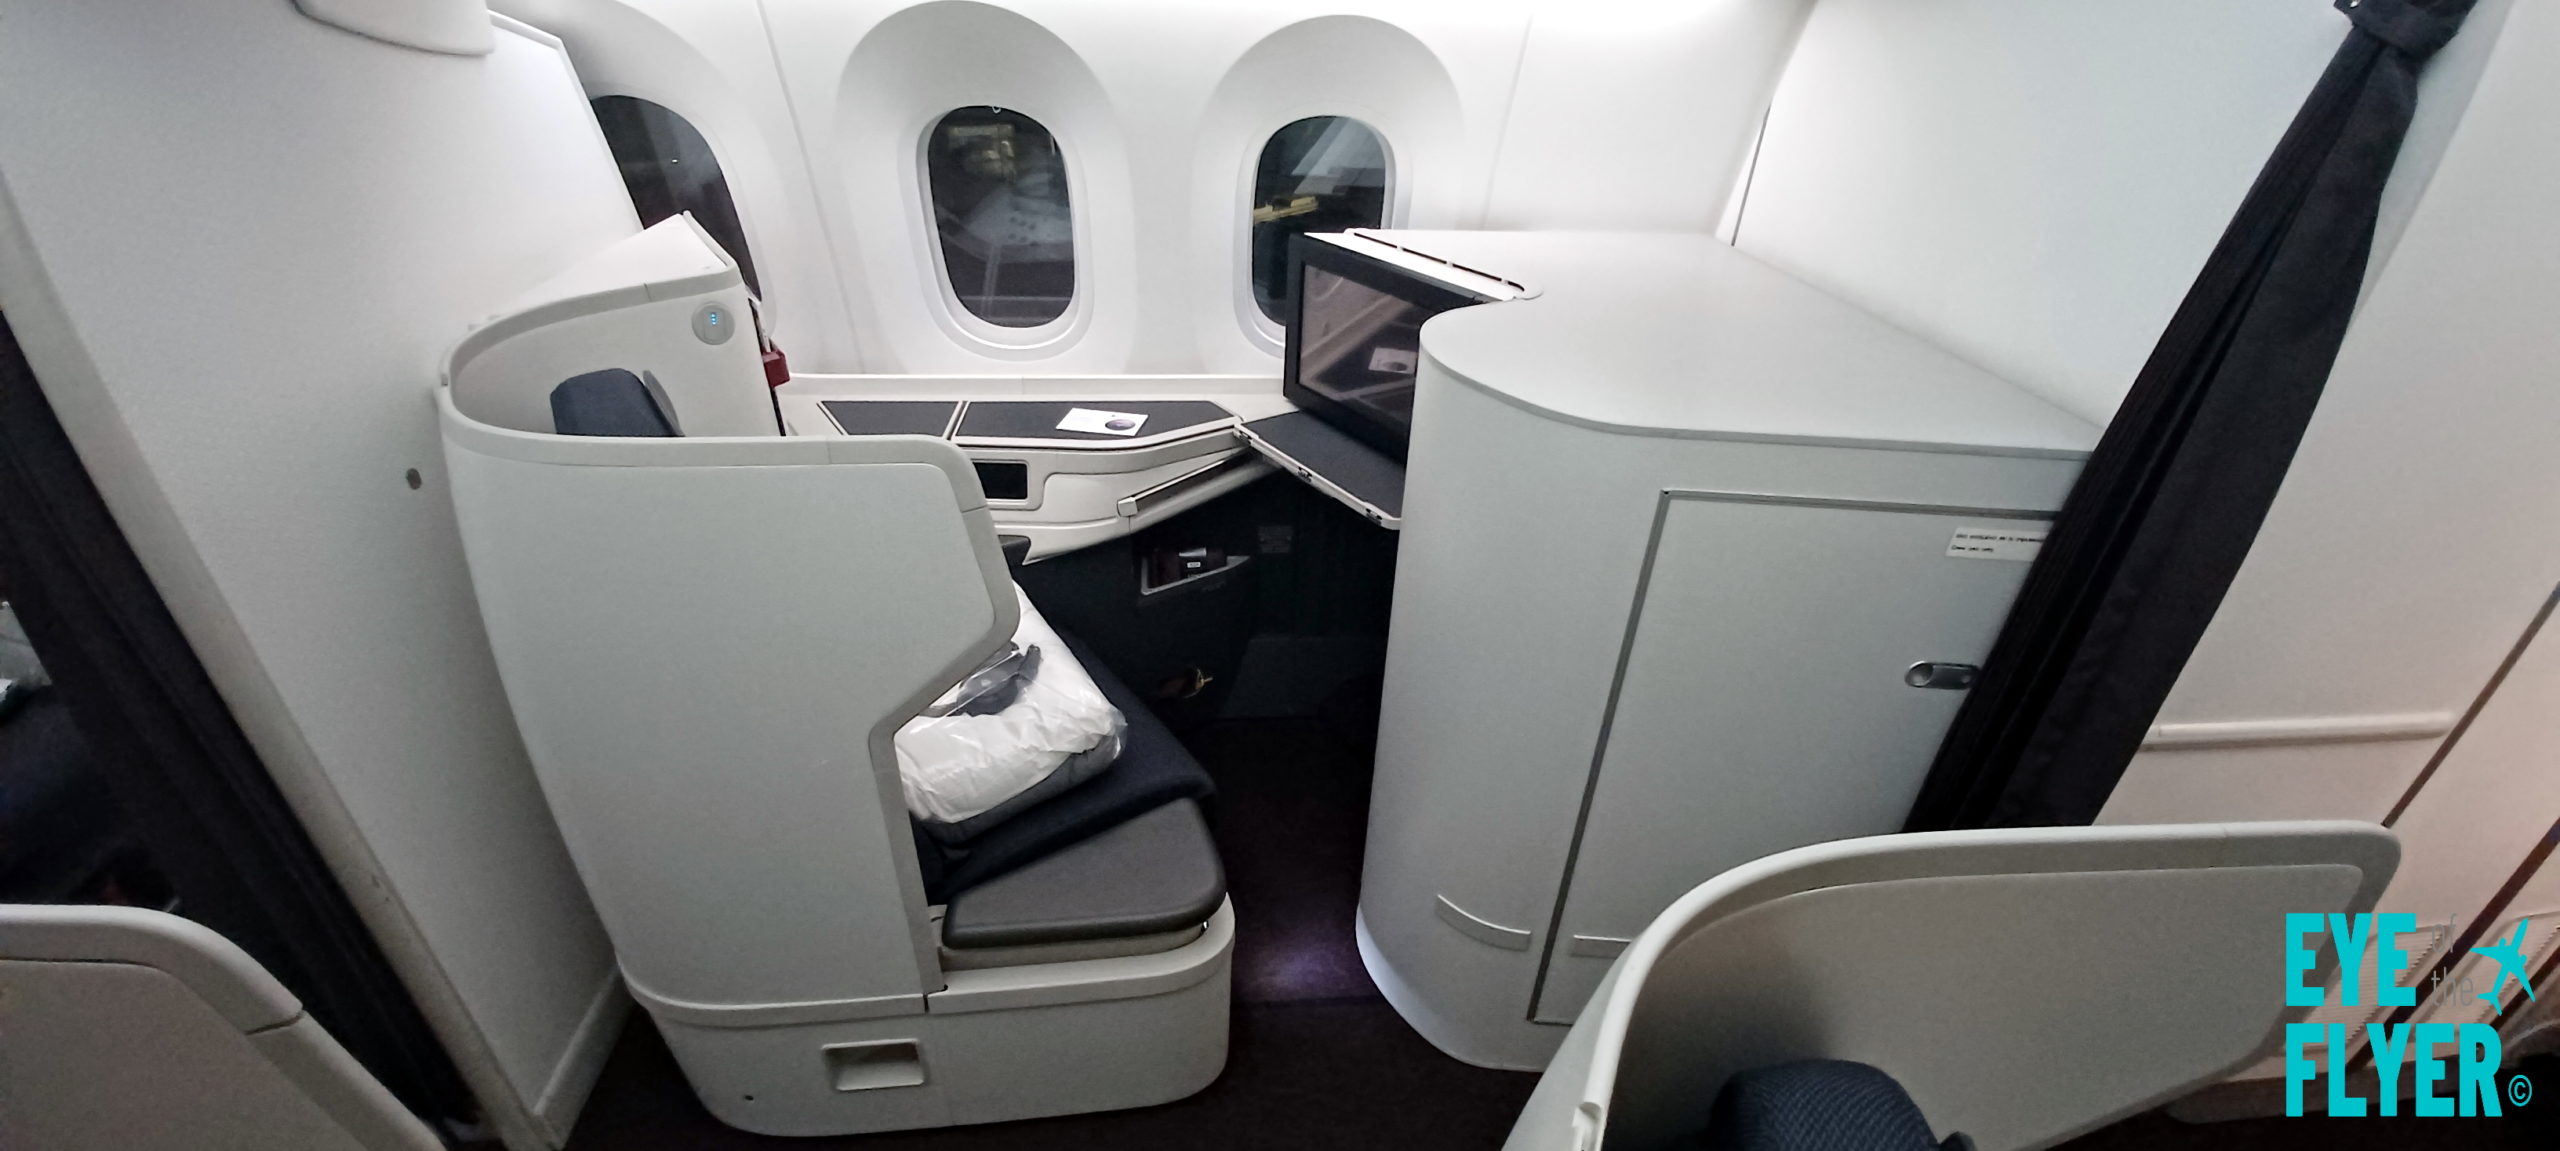 Best Business Class Seats On 787 9 | Brokeasshome.com